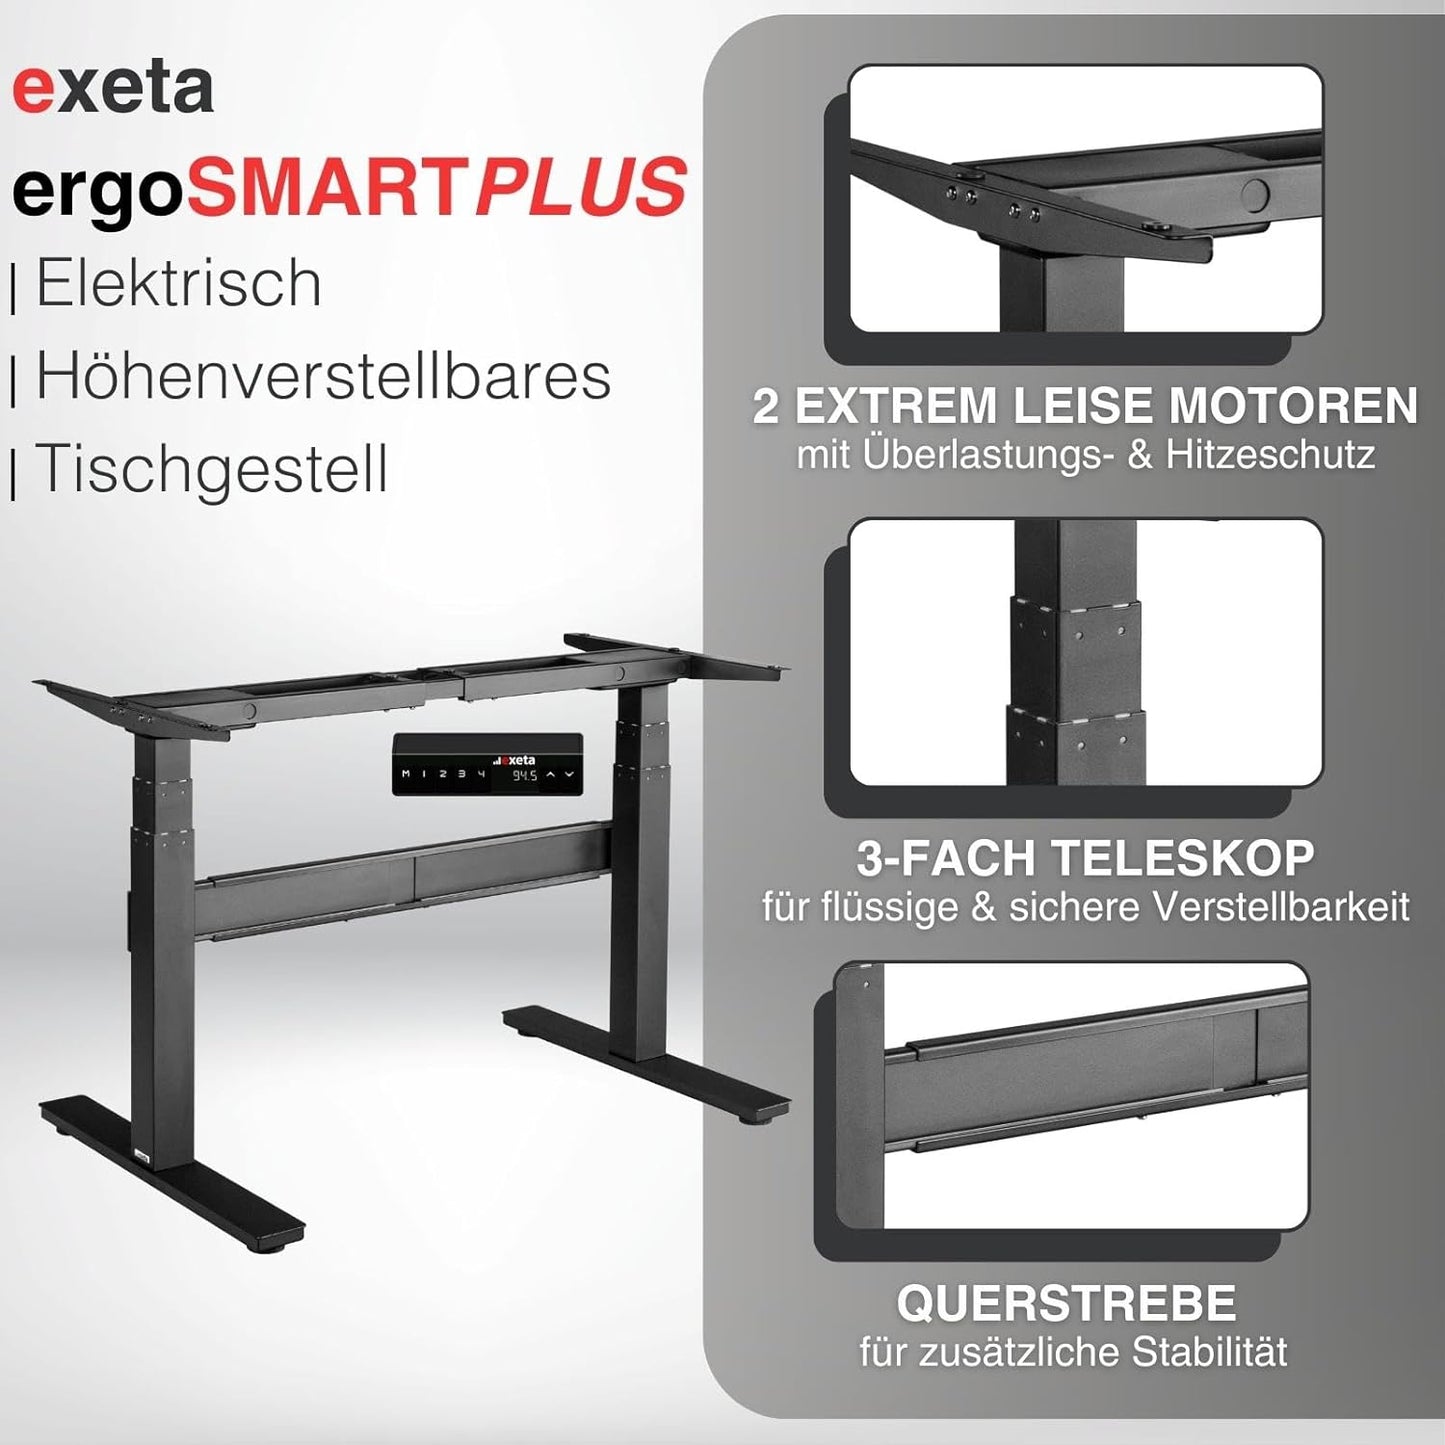 exeta ergoSMARTPLUS höhenverstellbarer Schreibtisch elektrisch Tischgestell schwarz Details